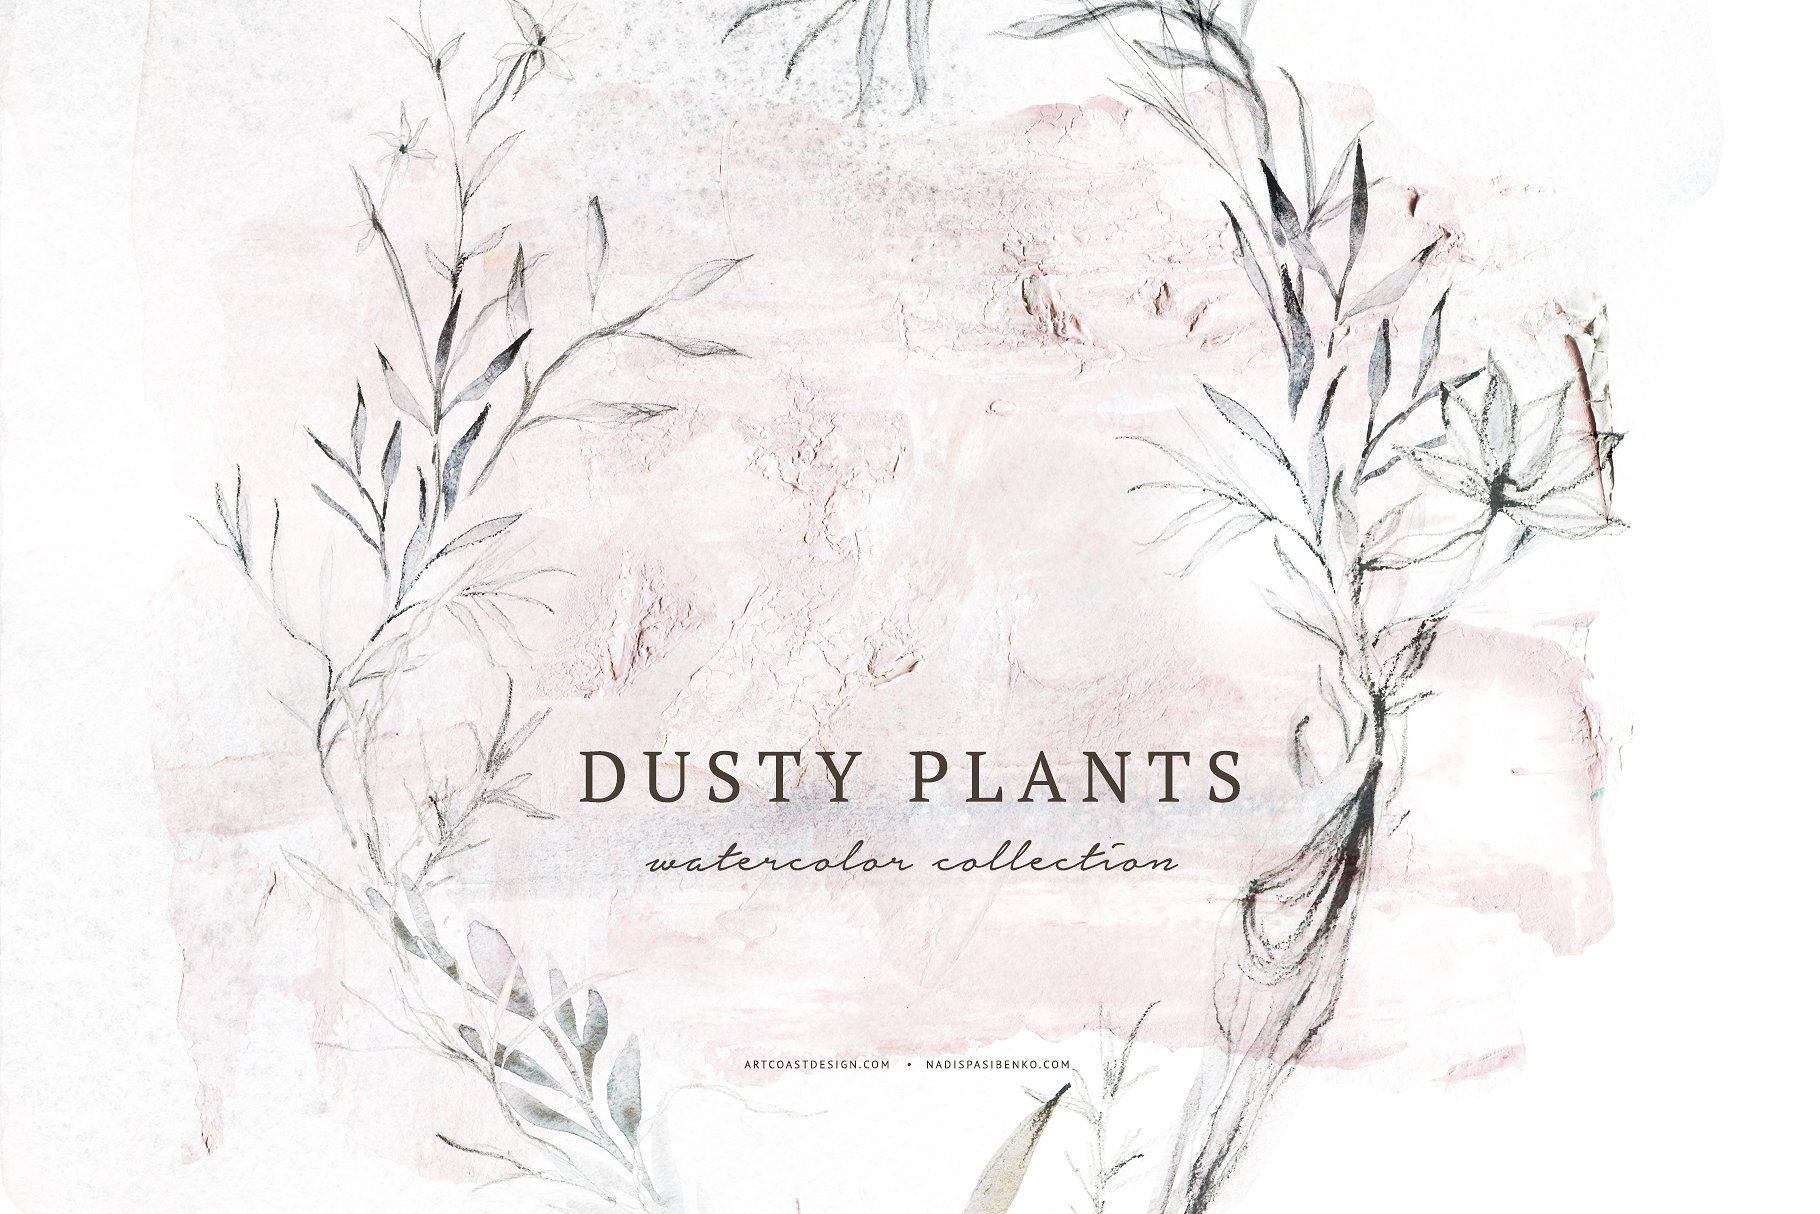 优雅的手绘植物花卉水彩画集 Elegant Hand Drawn Botanical Floral Watercolor Set插图